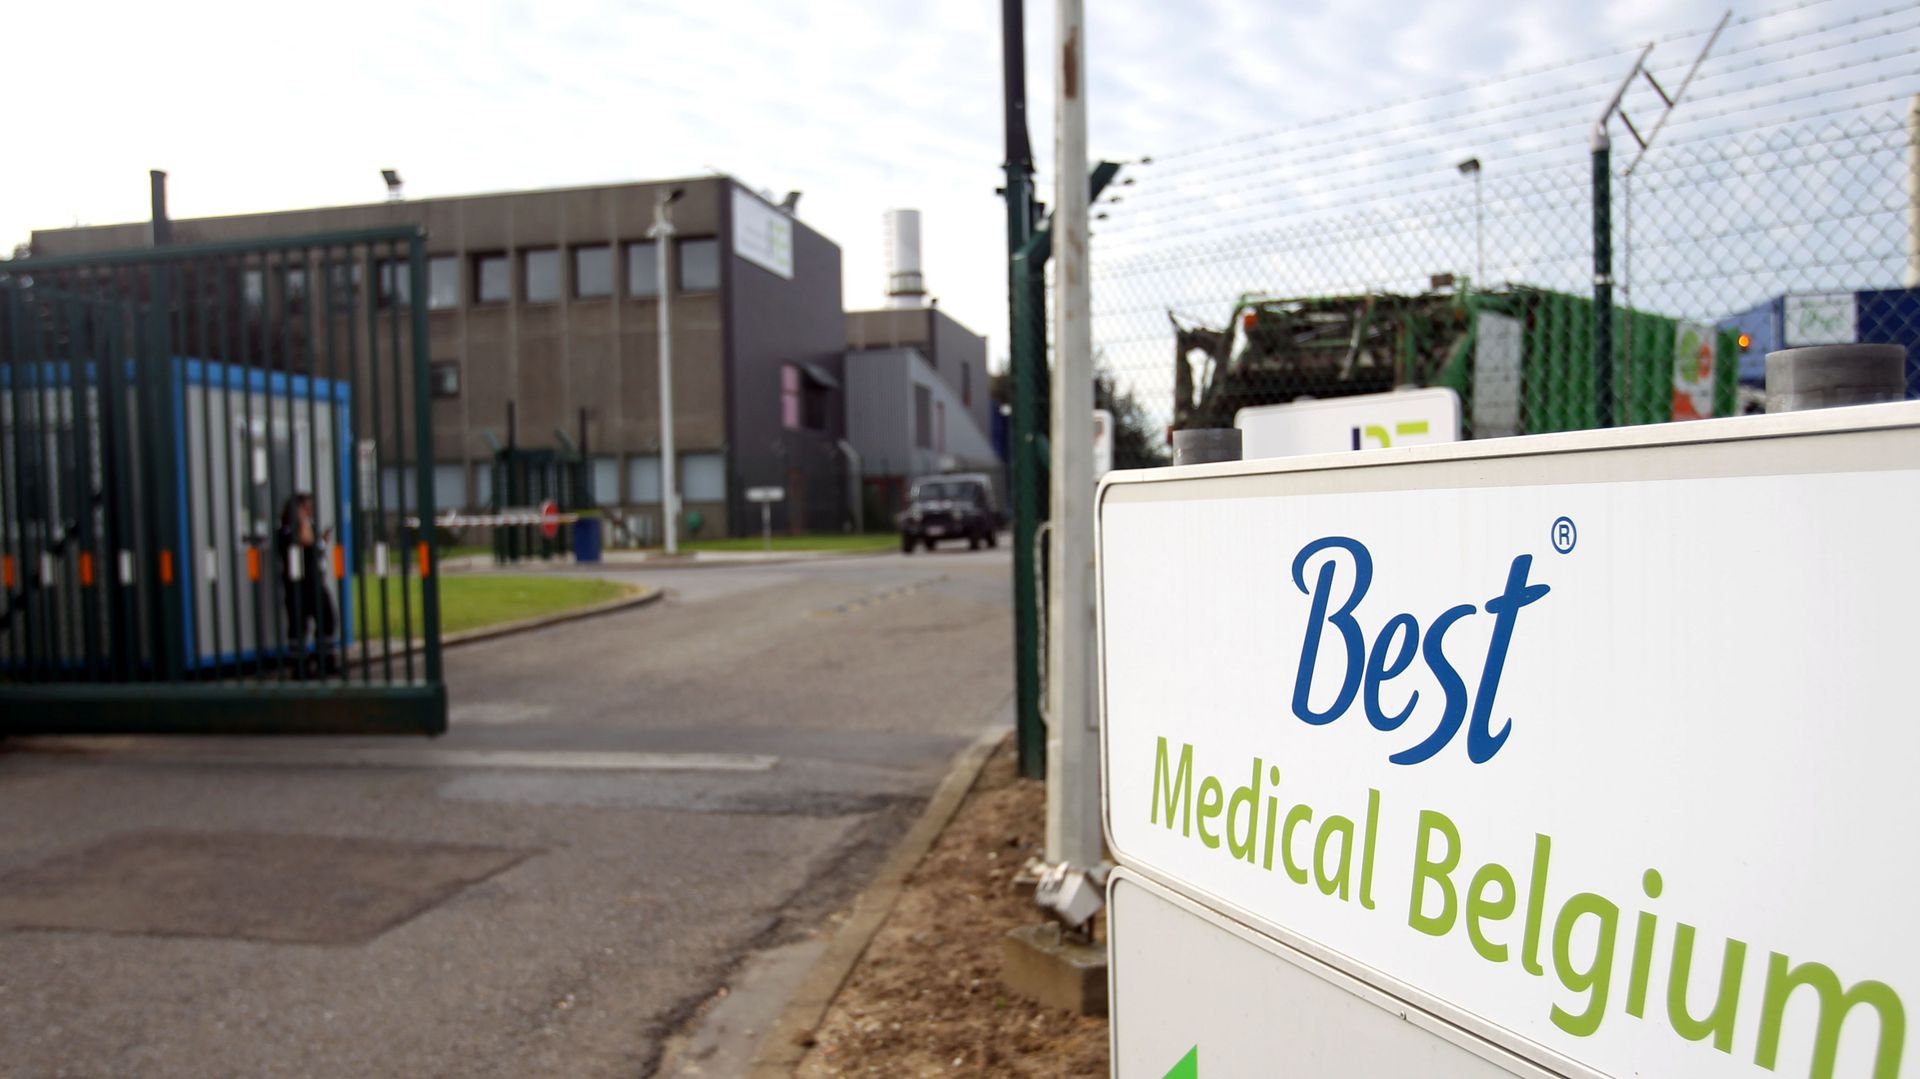 Best Medical : la Région wallonne paiera pour l'évacuation des déchets radioactifs